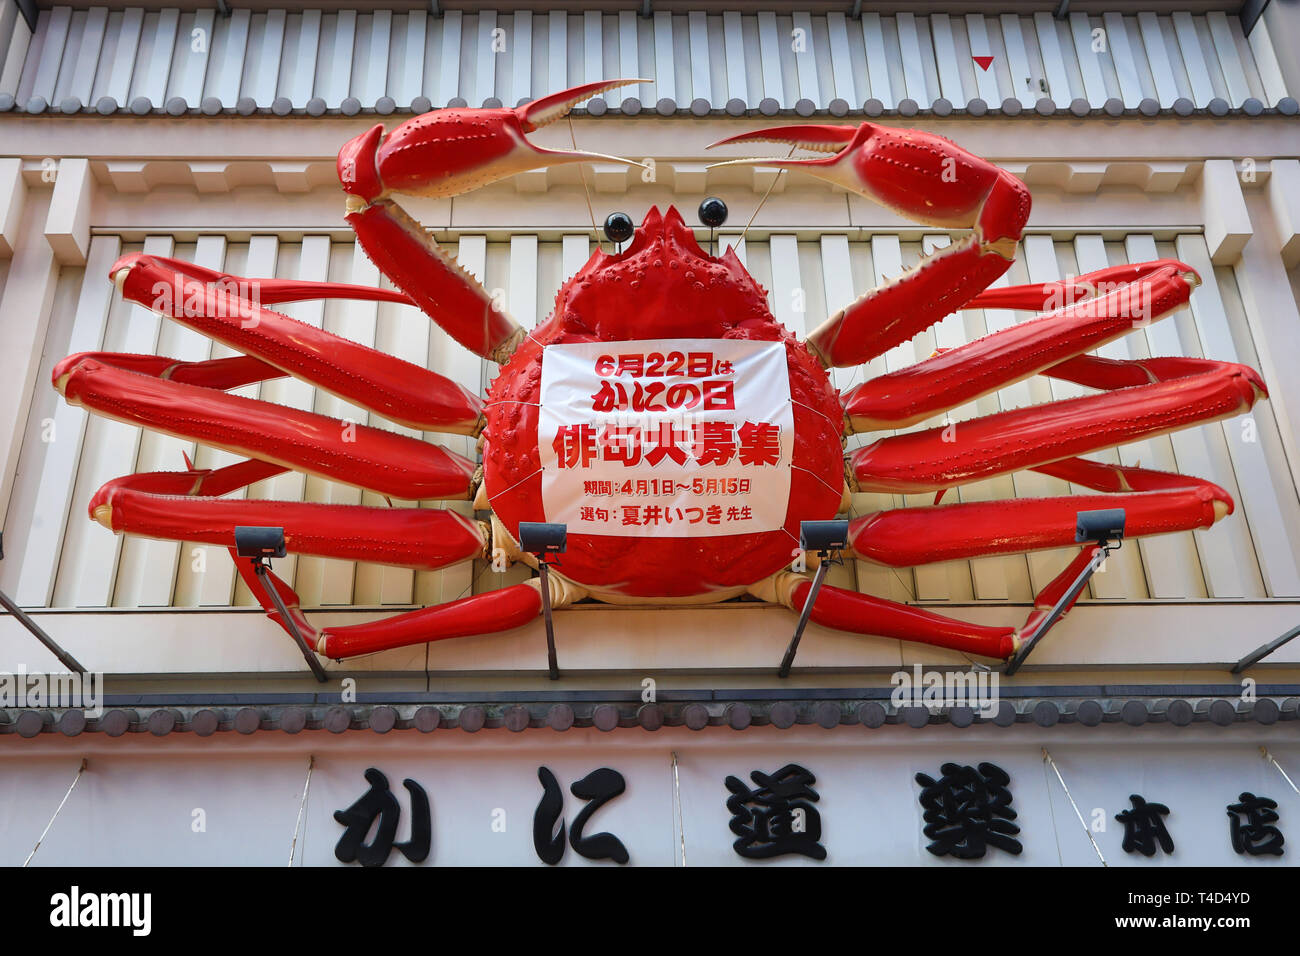 Giant crab advertising sign in Dotonbori, Osaka, Japan Stock Photo